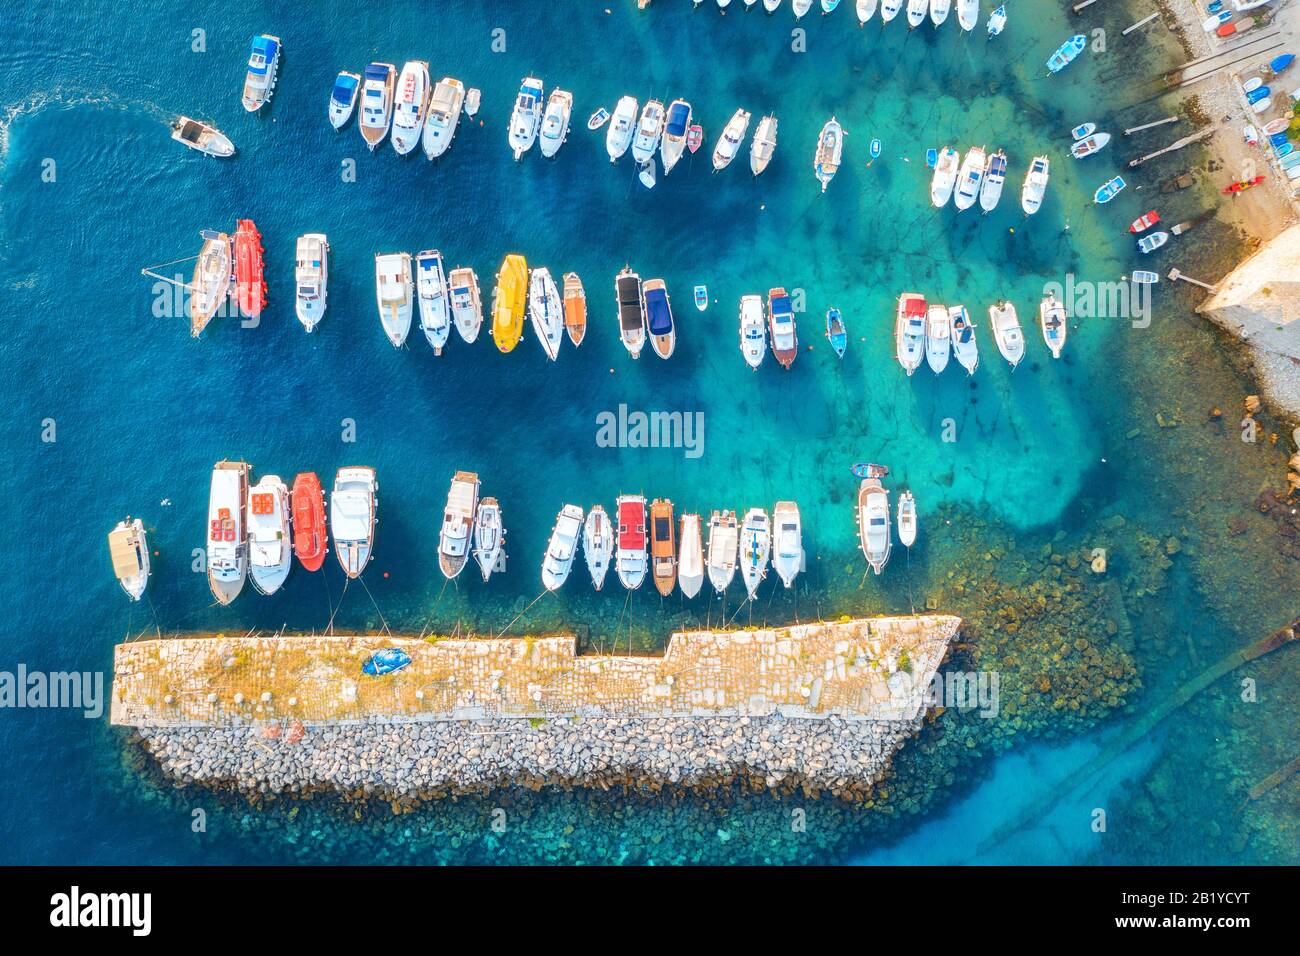 Vue aérienne des bateaux et yachts colorés dans le port en mer bleue Banque D'Images